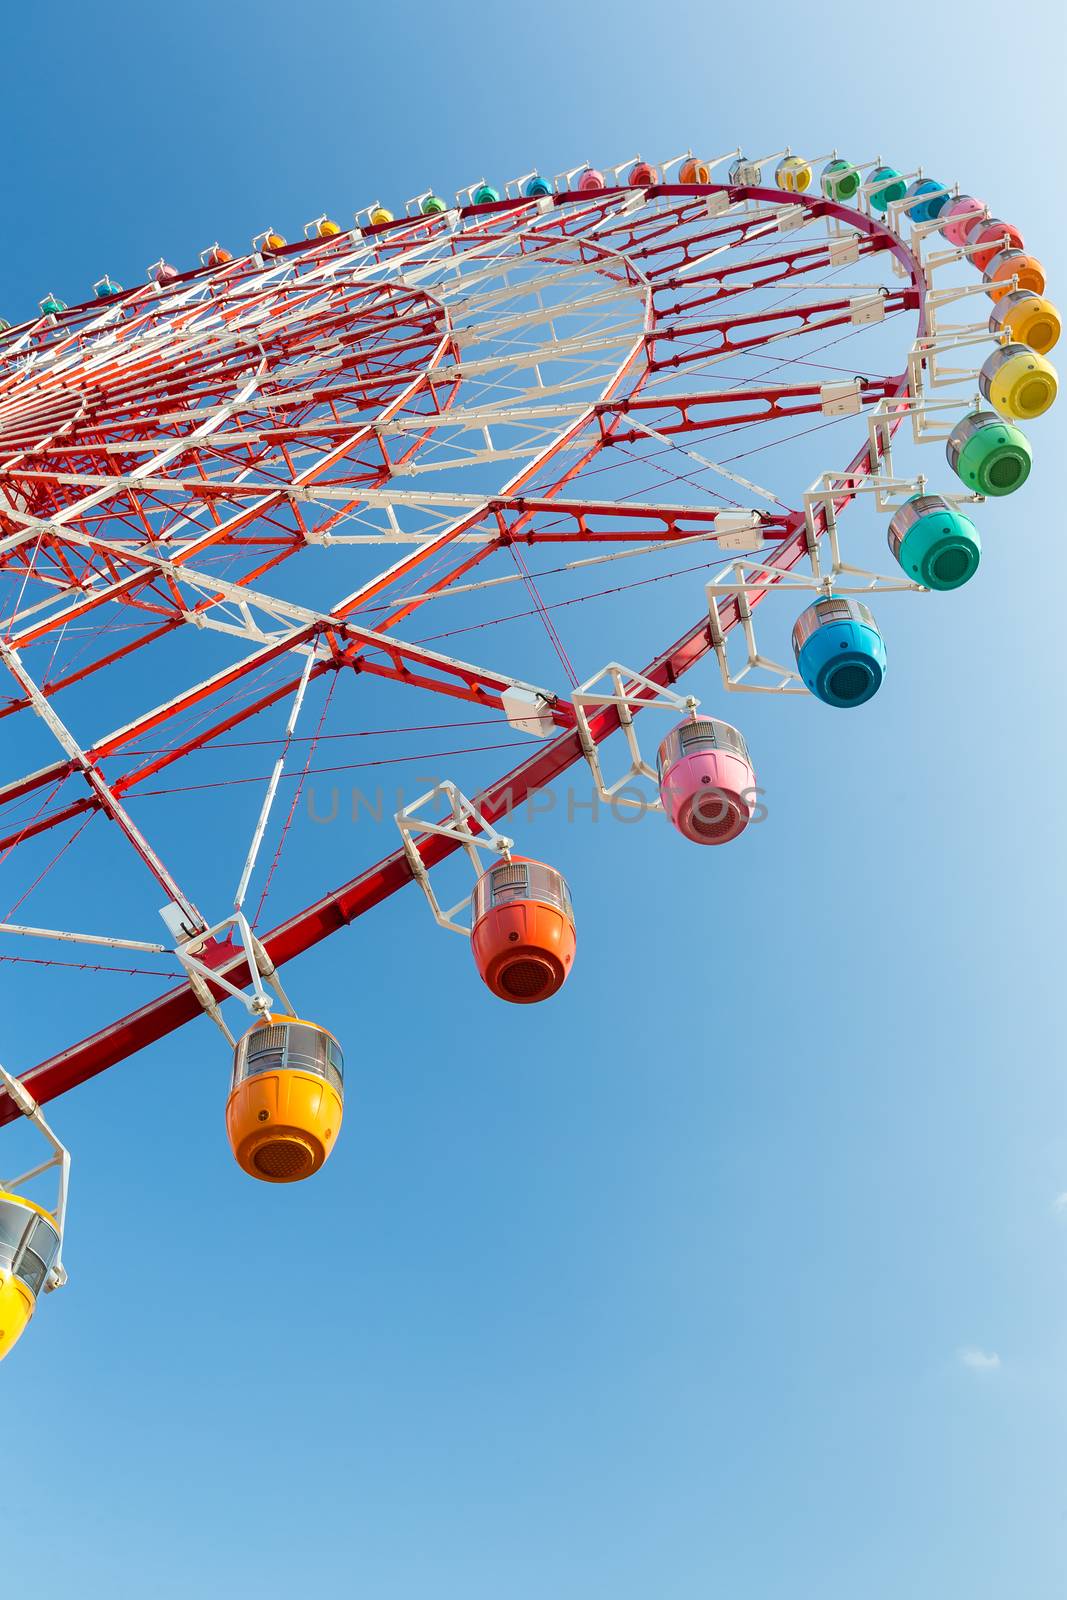 Ferris wheel in carnival by leungchopan